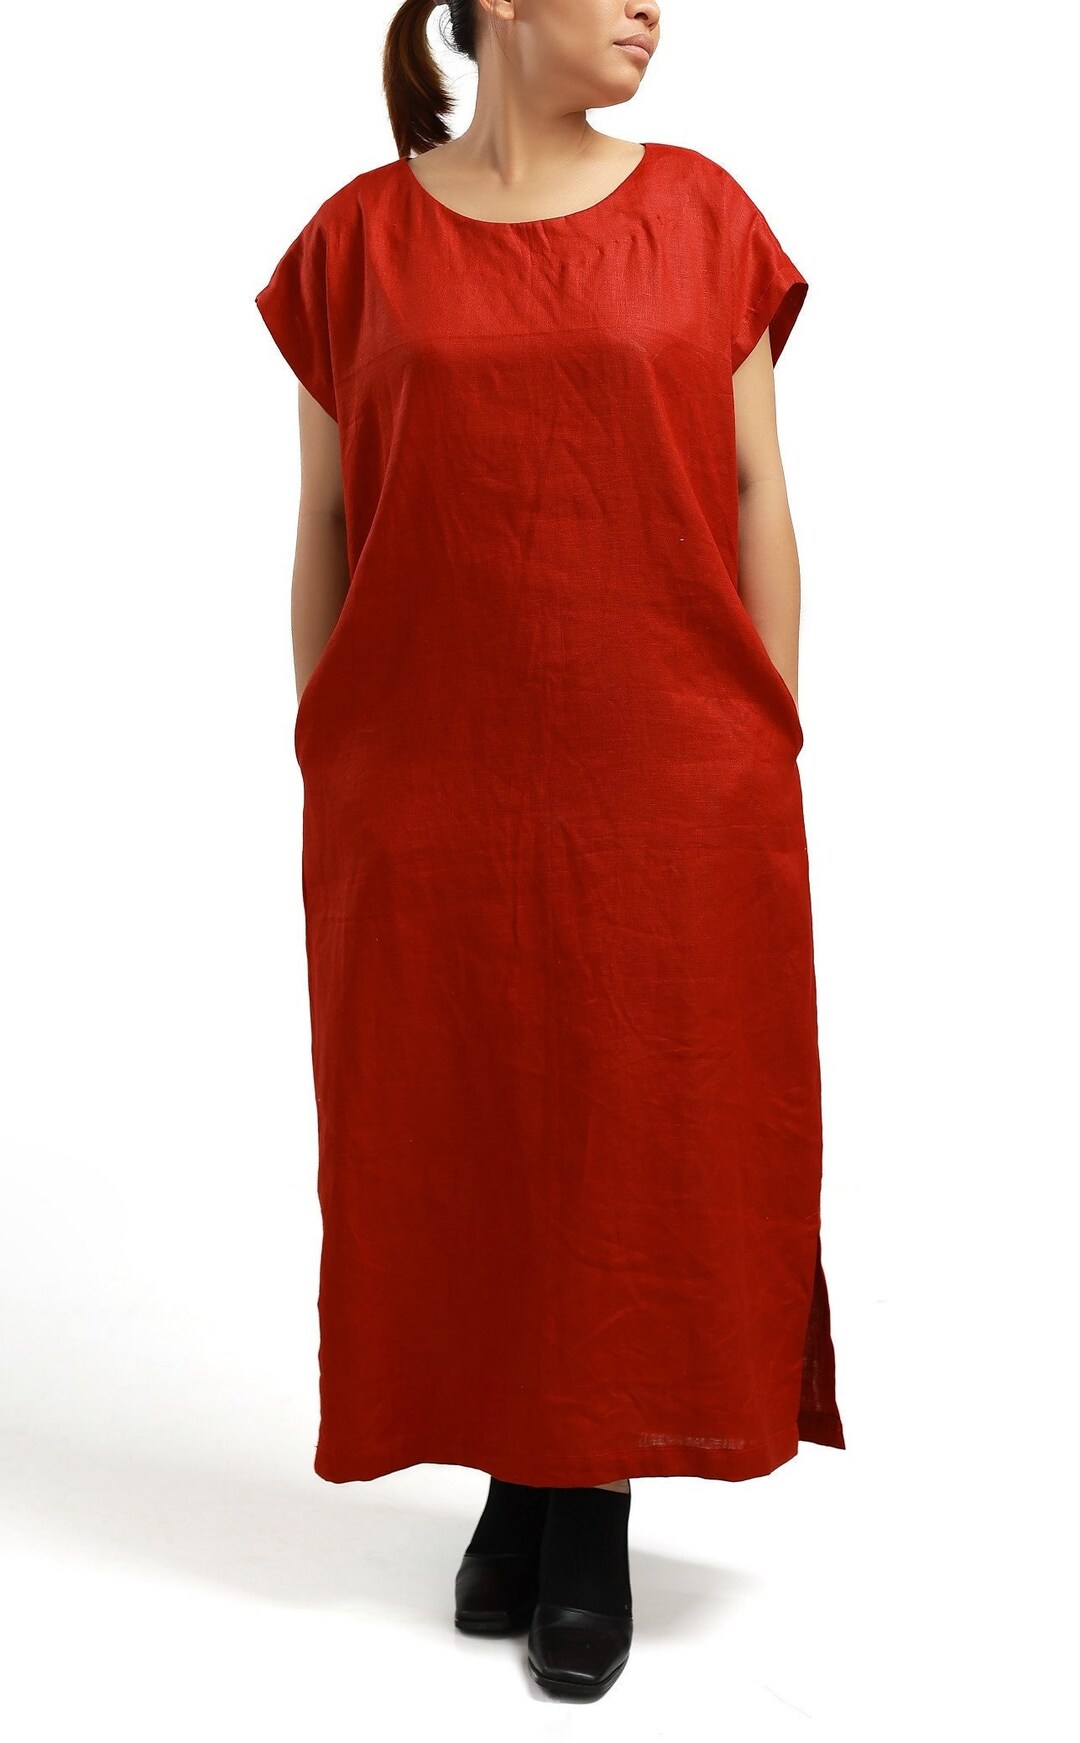 LINEN DRESS / Linen Long Dress / Linen Dress for Woman / Autum - Etsy